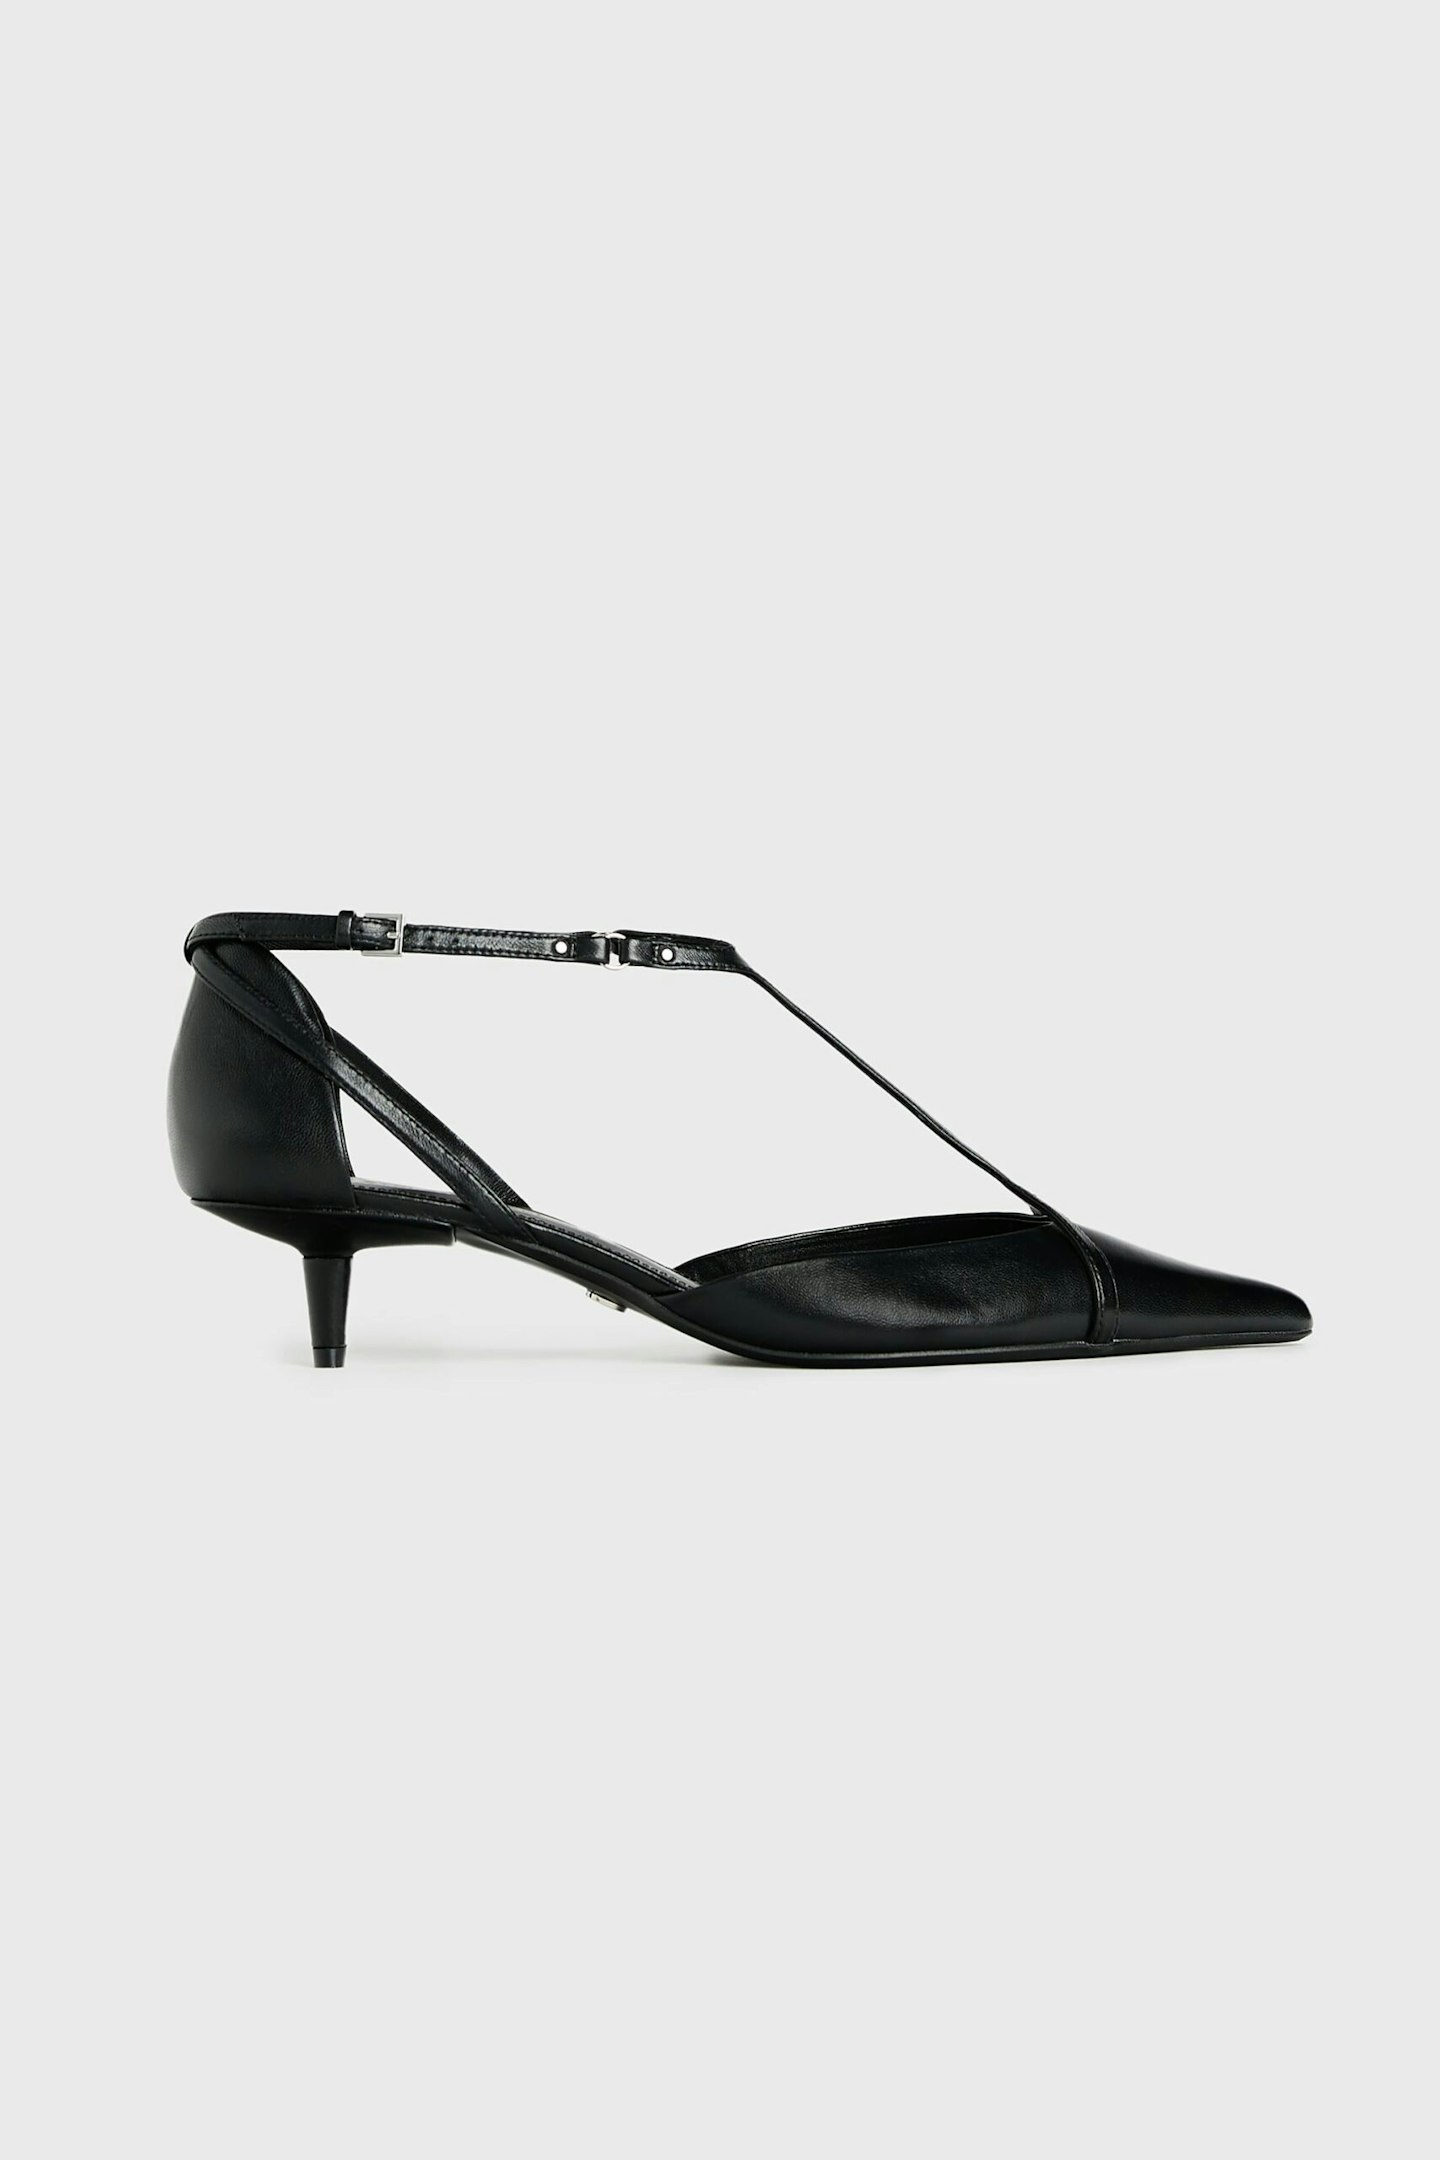 Zara, Steven Meisel Leather Heeled Shoes